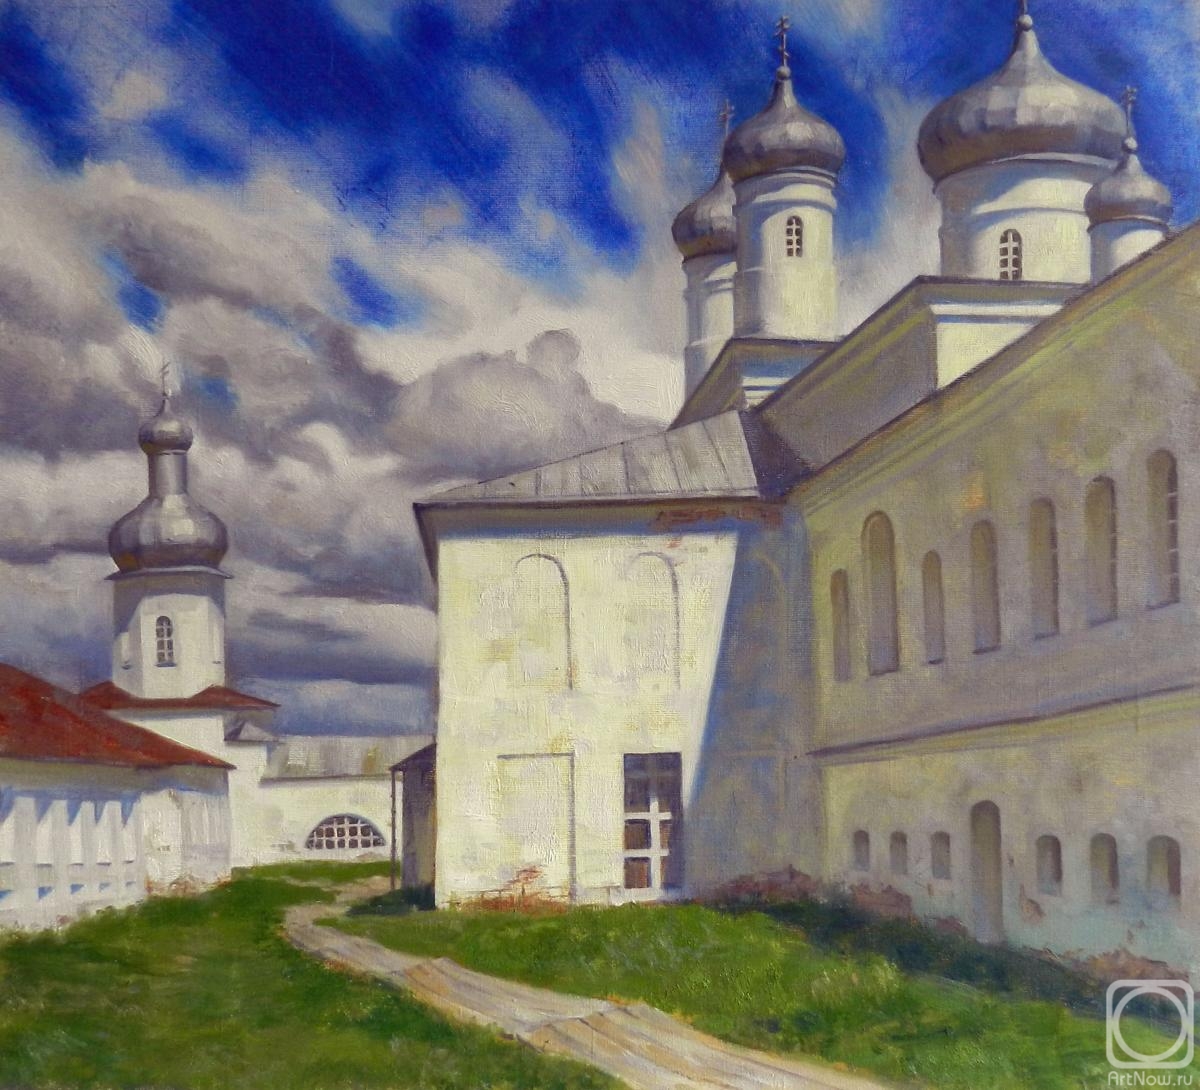 Vidaikin Vladimir. Yuriev monastery